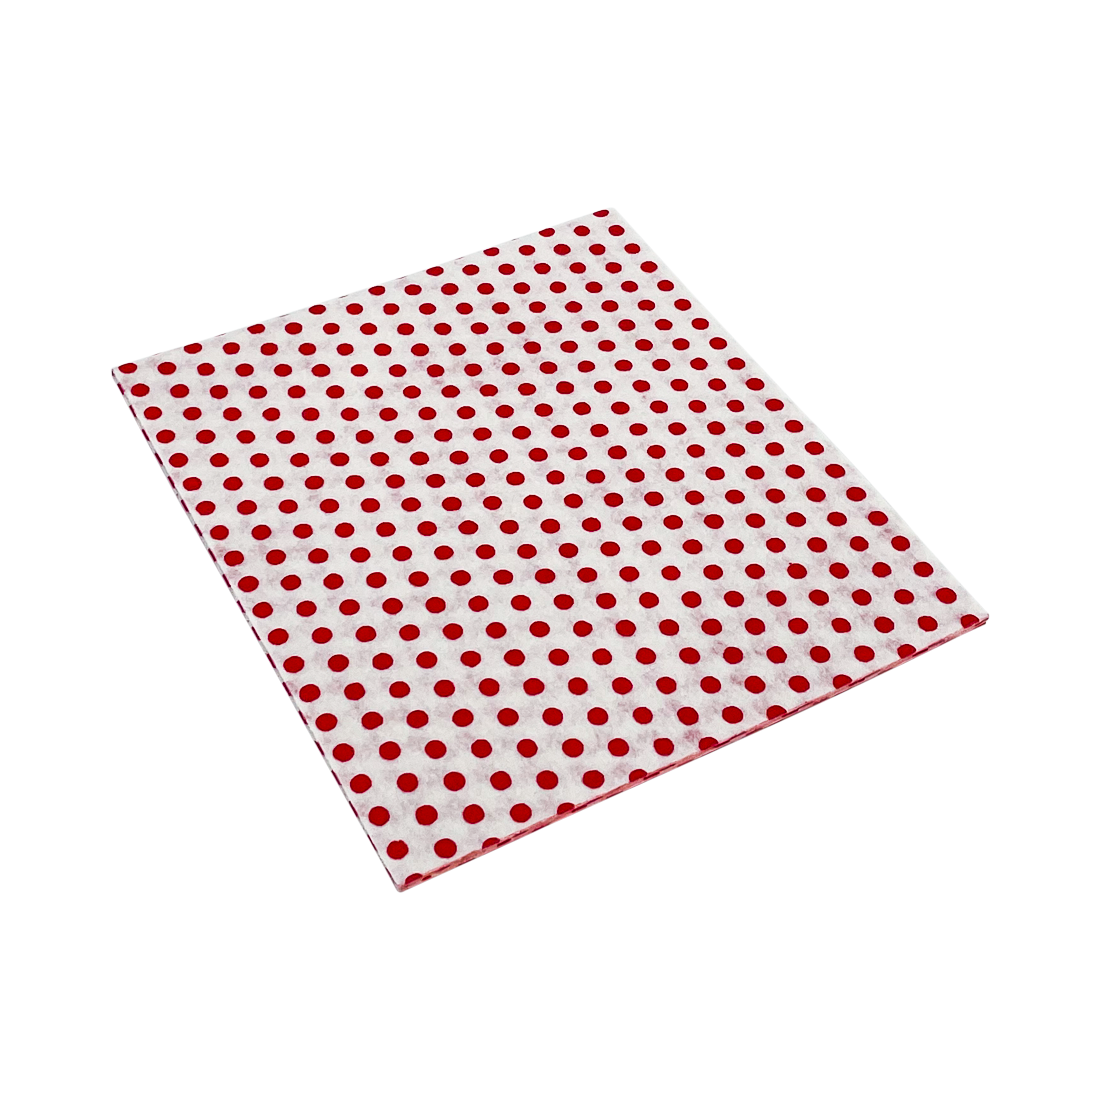 Profi-Wischtuch / Universaltuch 35 x 38 cm, rot, mit Latex-Noppenstruktur, 10 Stück/Packung